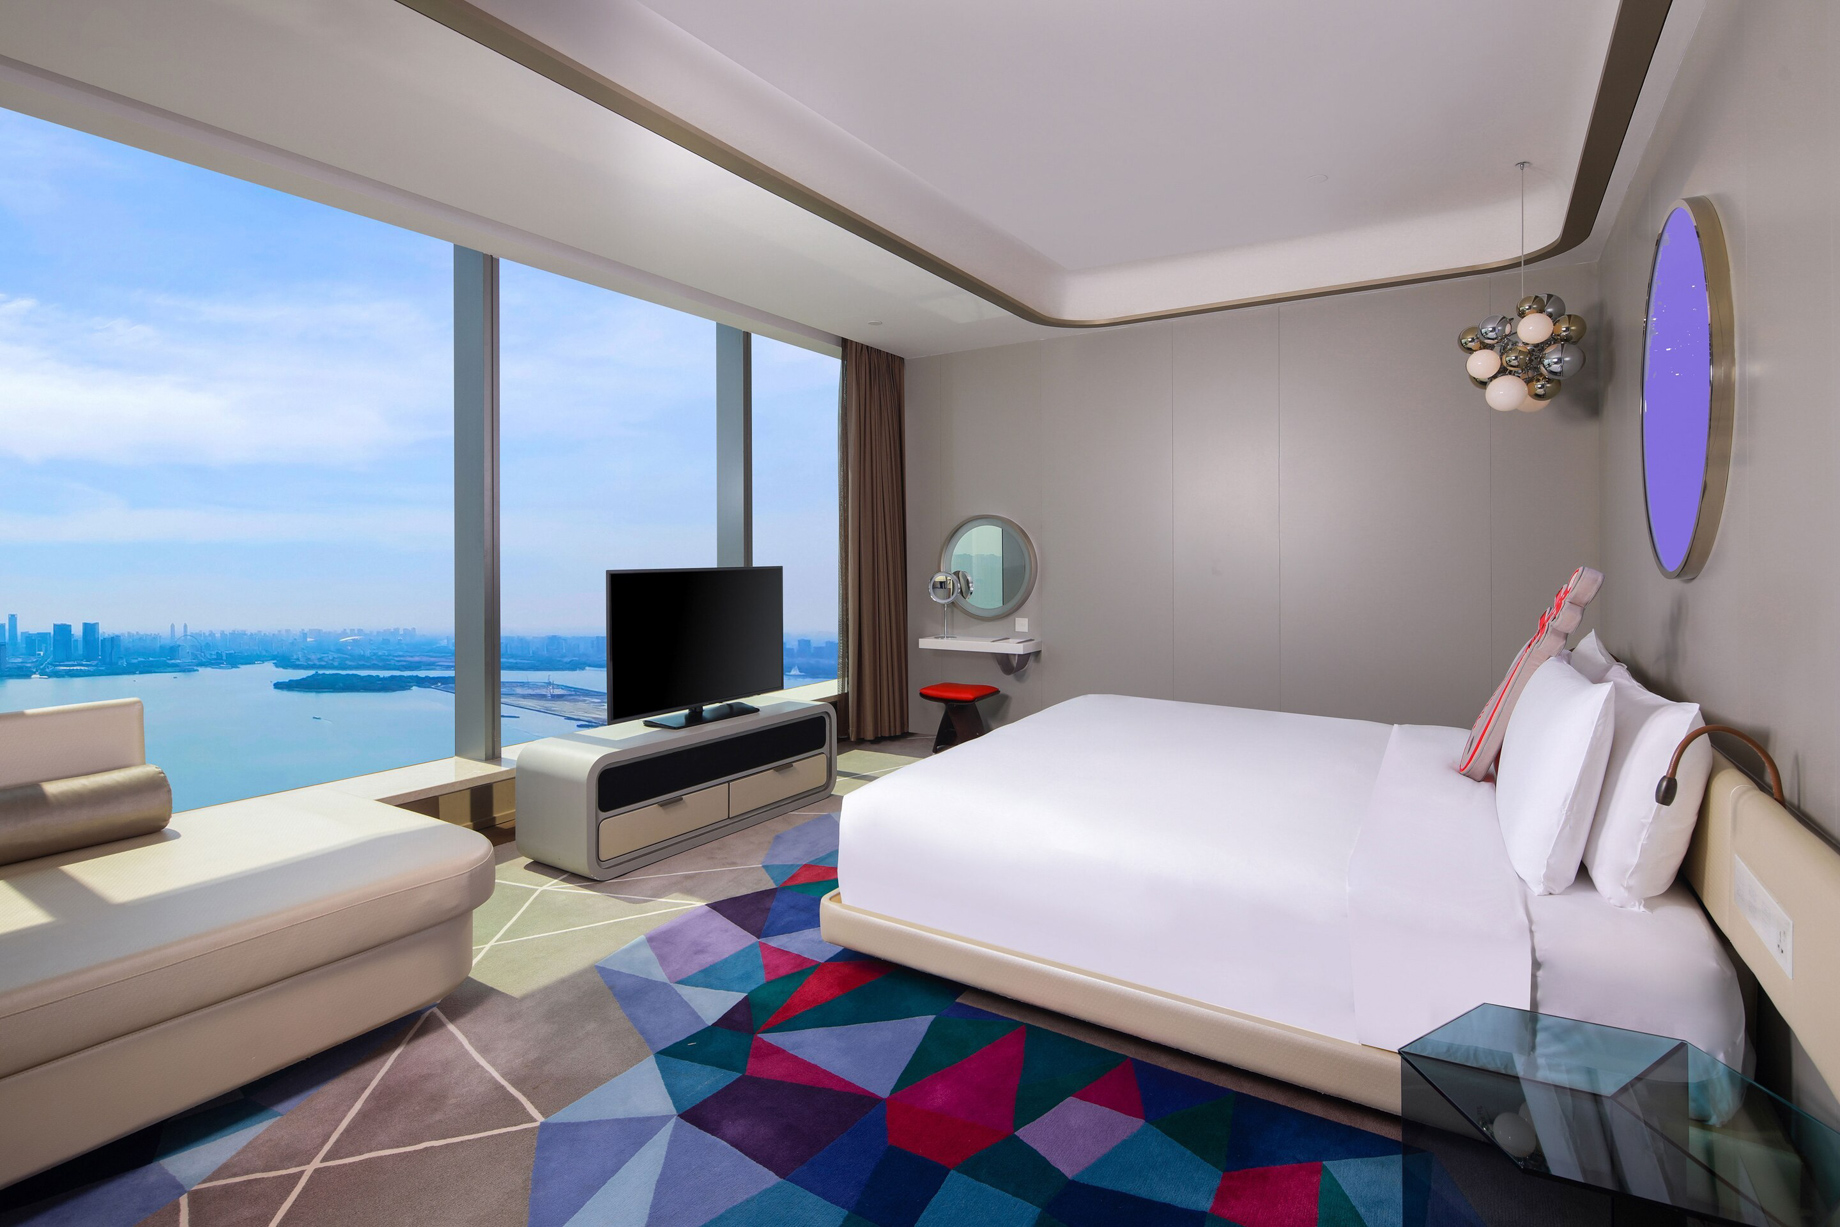 W Suzhou Hotel - Suzhou, China - Fabulous Room